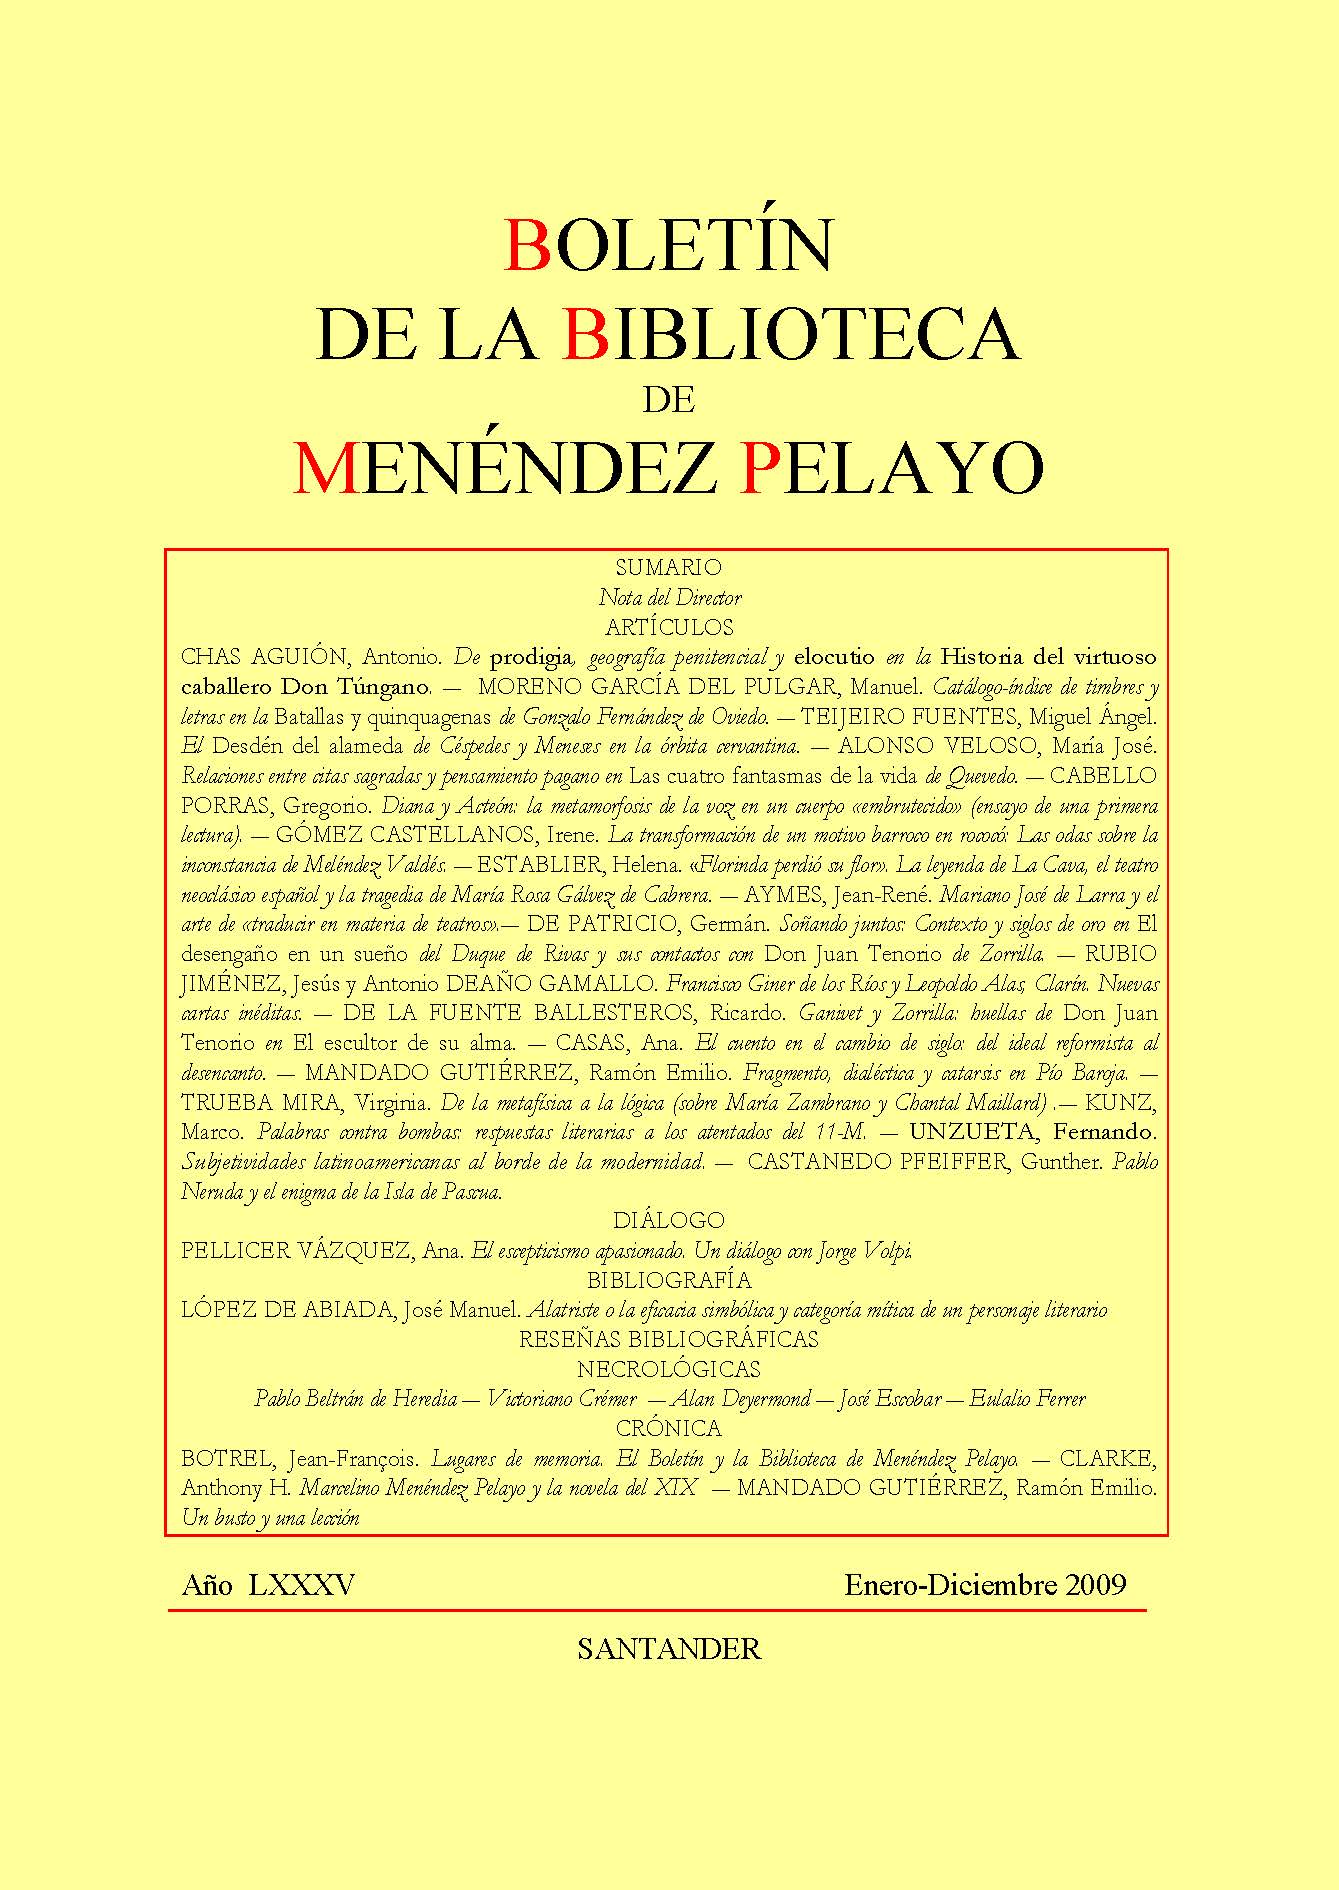 					Ver Vol. 85 Núm. Único (2009): Boletín de la Biblioteca de Menéndez Pelayo
				